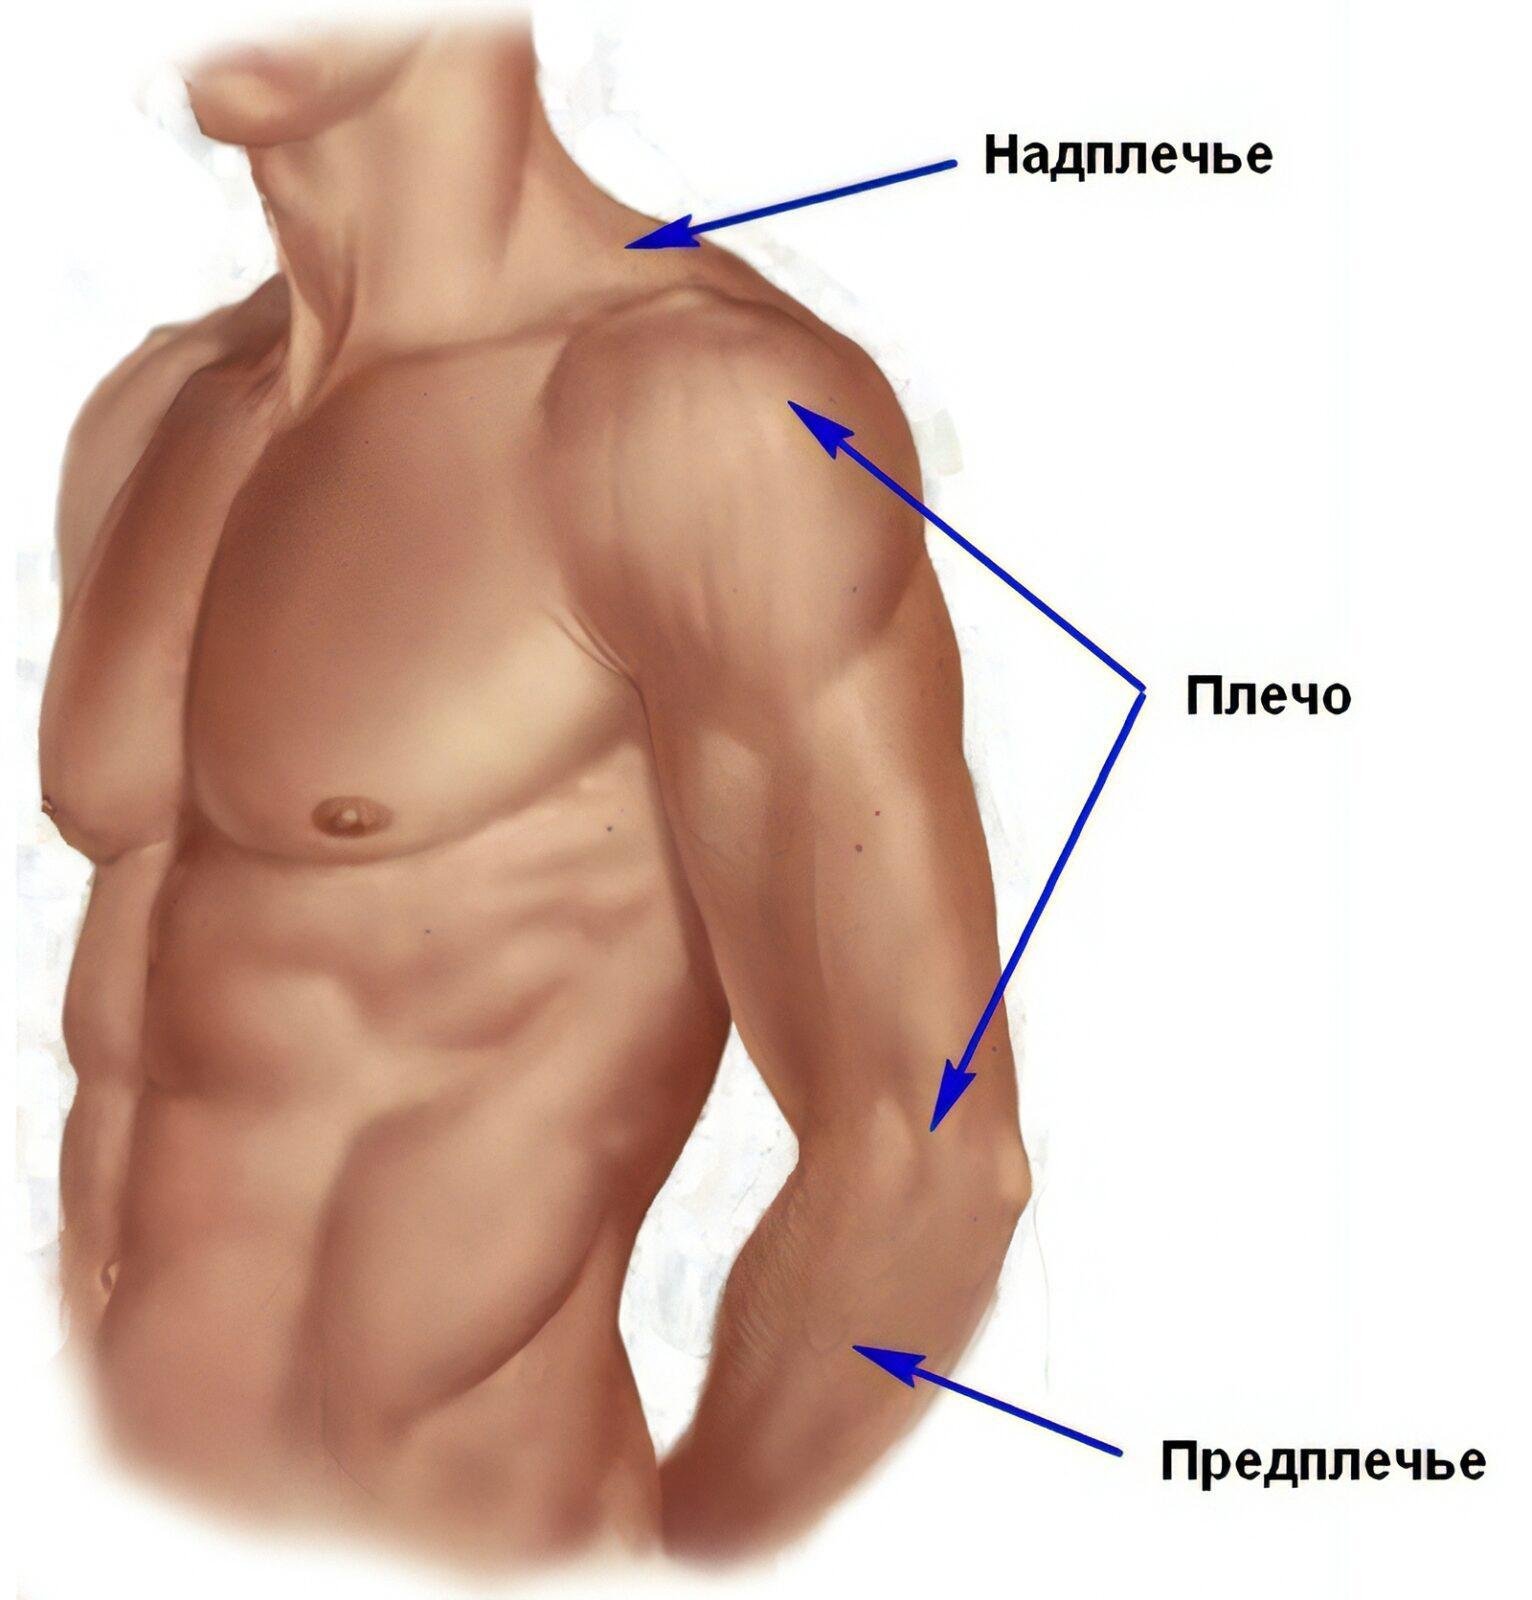 Местоположение рук. Анатомия плечо и предплечье. Где плечо а где предплечье у человека. Анатомия предплечья человека. Части руки человека названия.